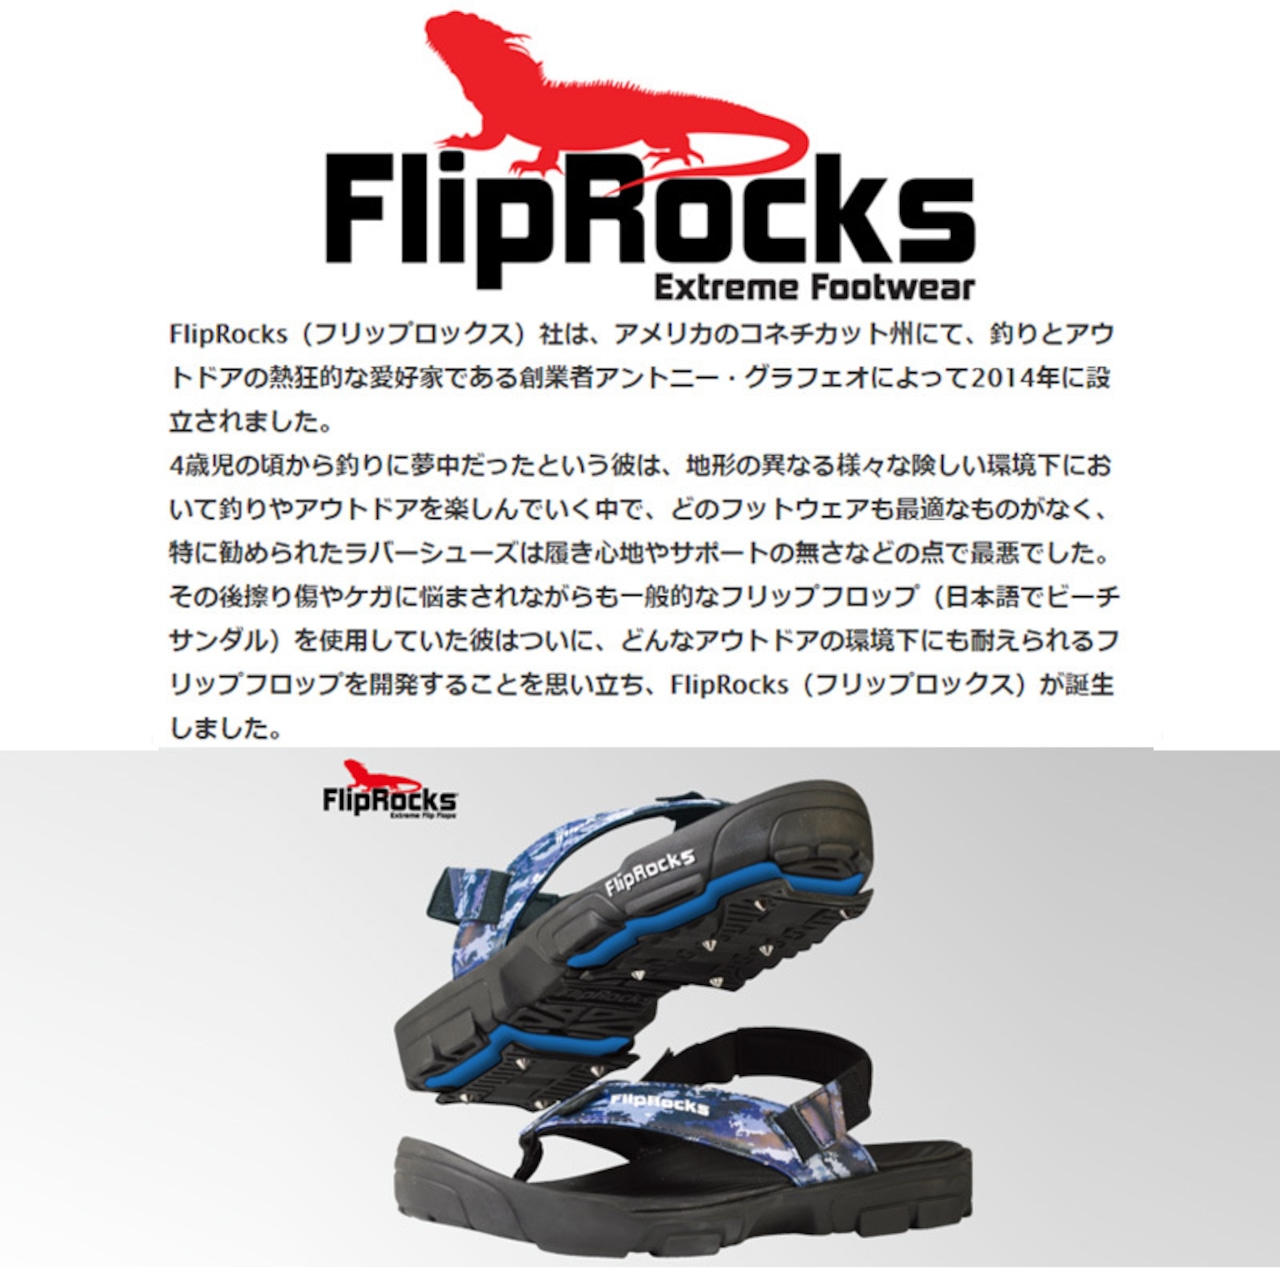 FlipRocks(フリップロックス) フリップフロップ パッドセット カヤッカー ソール スポーツサンダル トレッキングシューズ アウトドア 用品 キャンプ グッズ